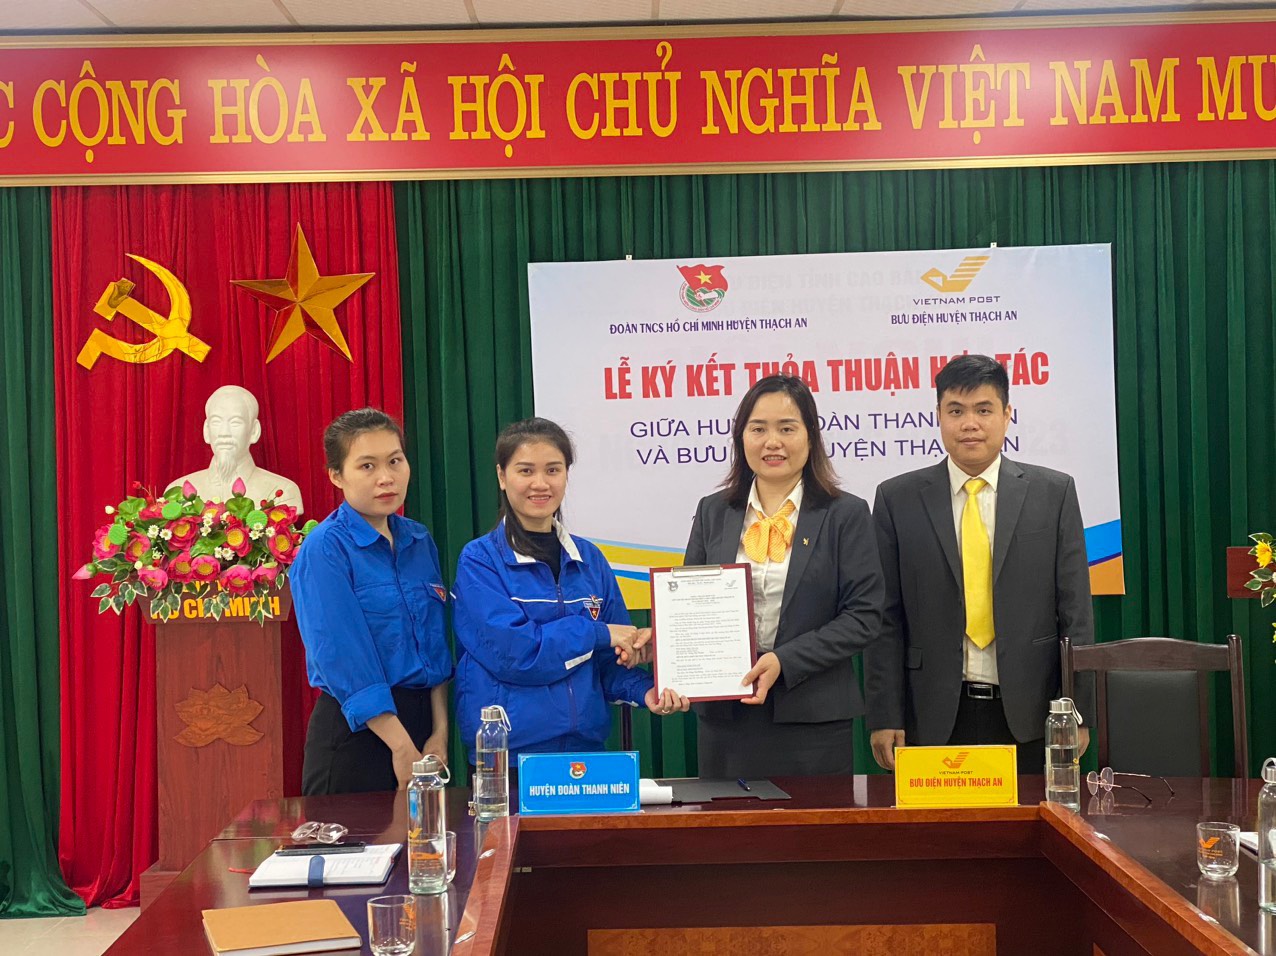 Huyện Đoàn Thạch An và Bưu điện huyện Thạch An ký kết thỏa thuận hợp tác